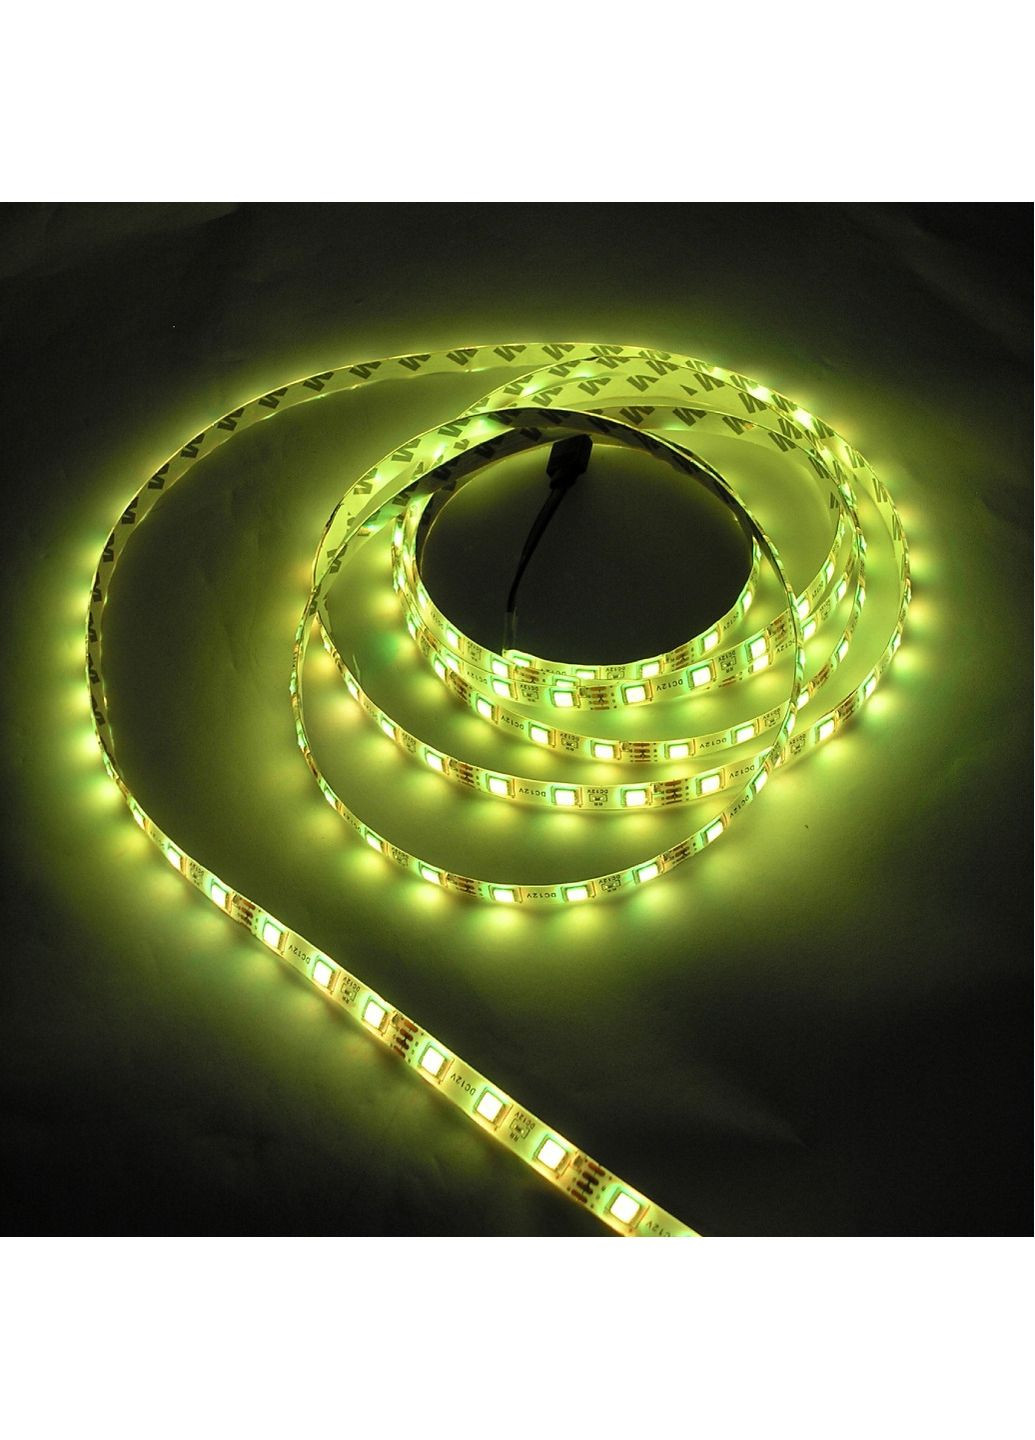 Стрічка LED 5050 світлодіодна 5 метрів гірлянда Світломузика блютуз на будь-які поверхні пульт Д/У від мережі No Brand (260661270)